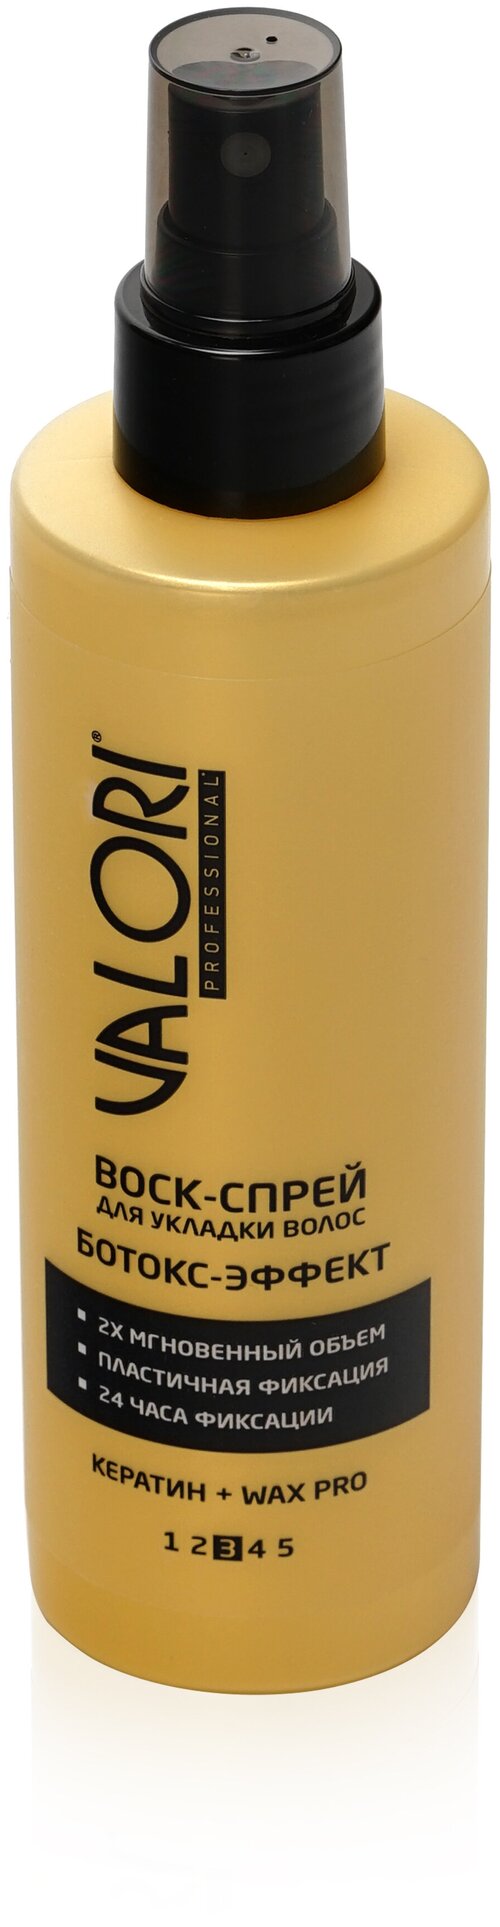 Воск ботокс-эффект Valori Professional, спрей для волос, 200 мл.